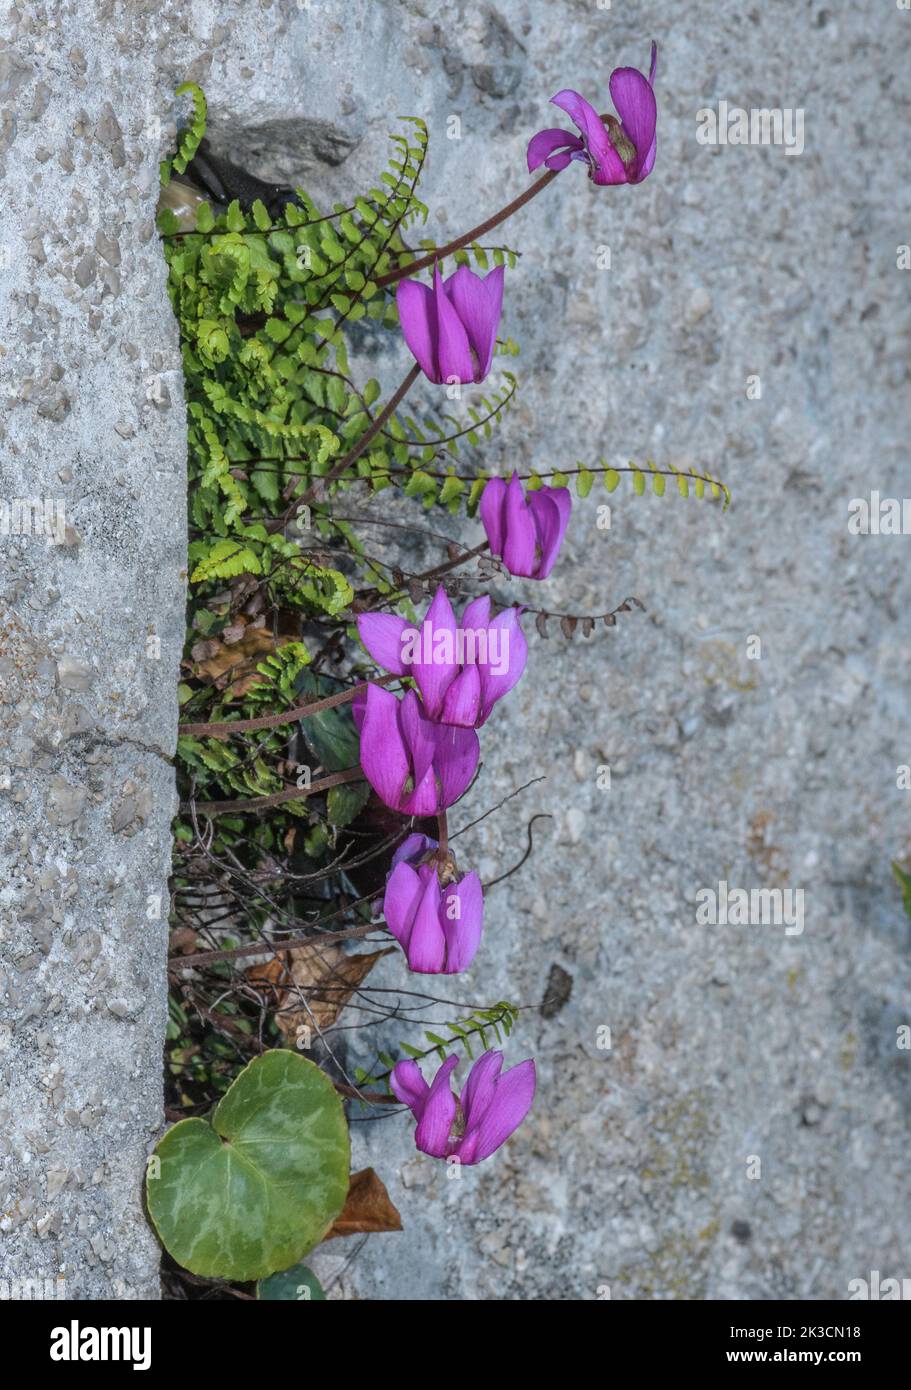 Alpine cyclamen, Cyclamen purpurascens, in flower on limestone slope in the Italian Alps. Stock Photo